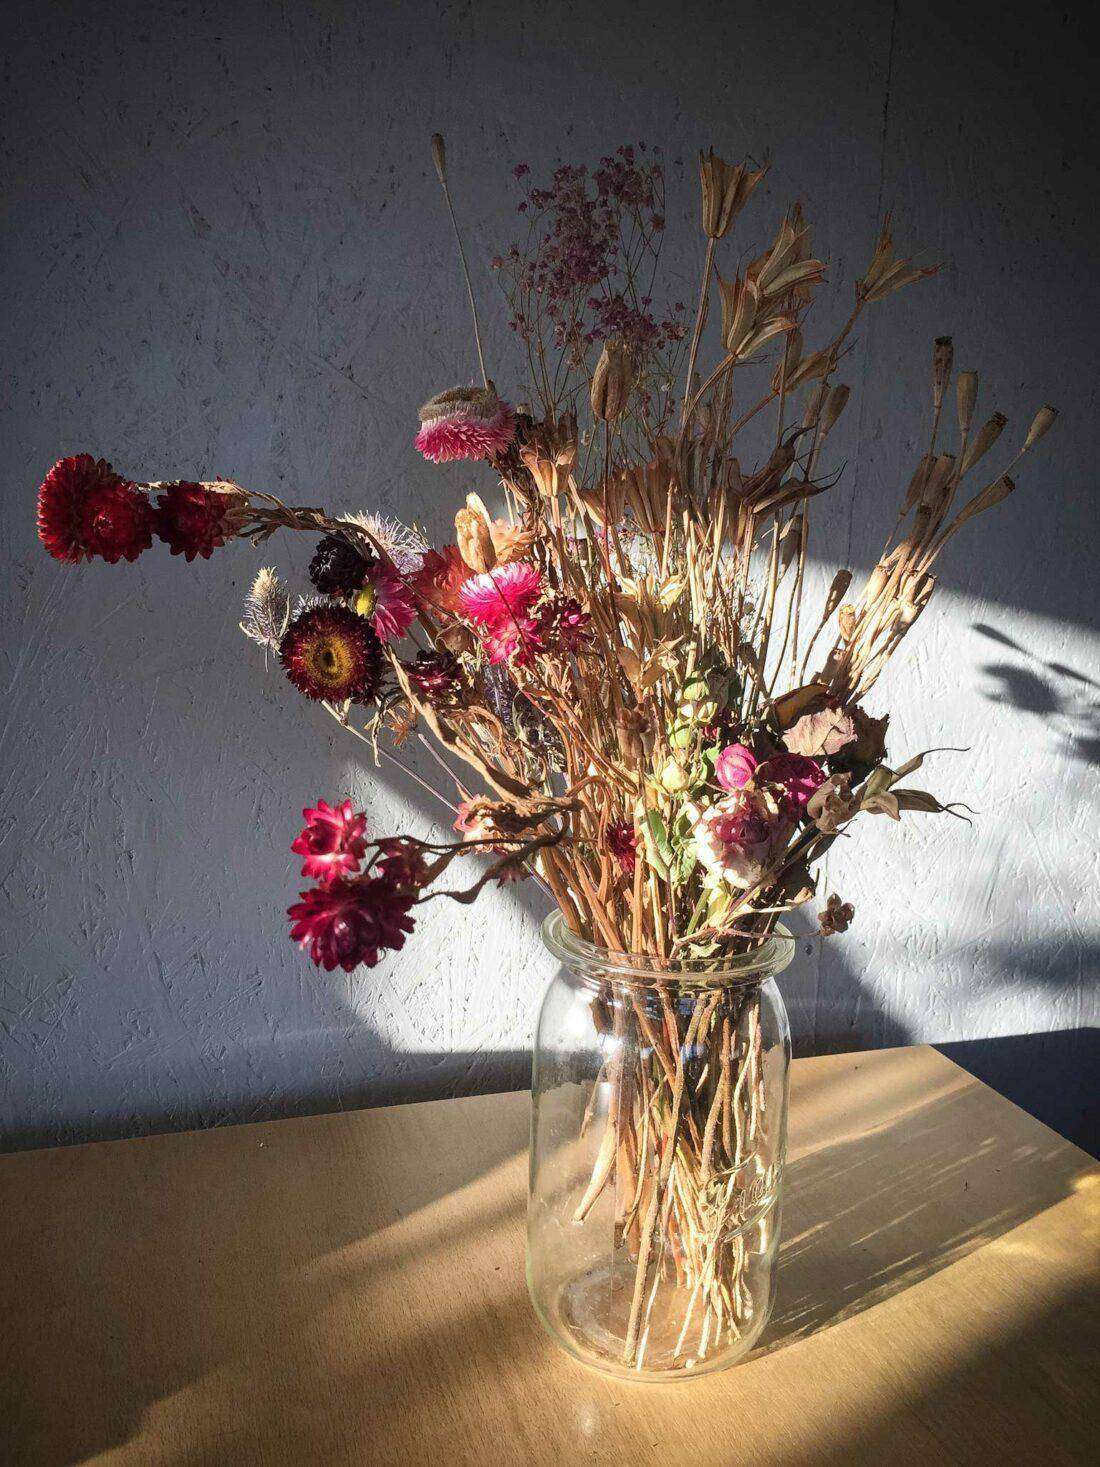 Schnittblumen im Garten: Ein Strauß getrockneter Blumen steht auf einem Tisch.